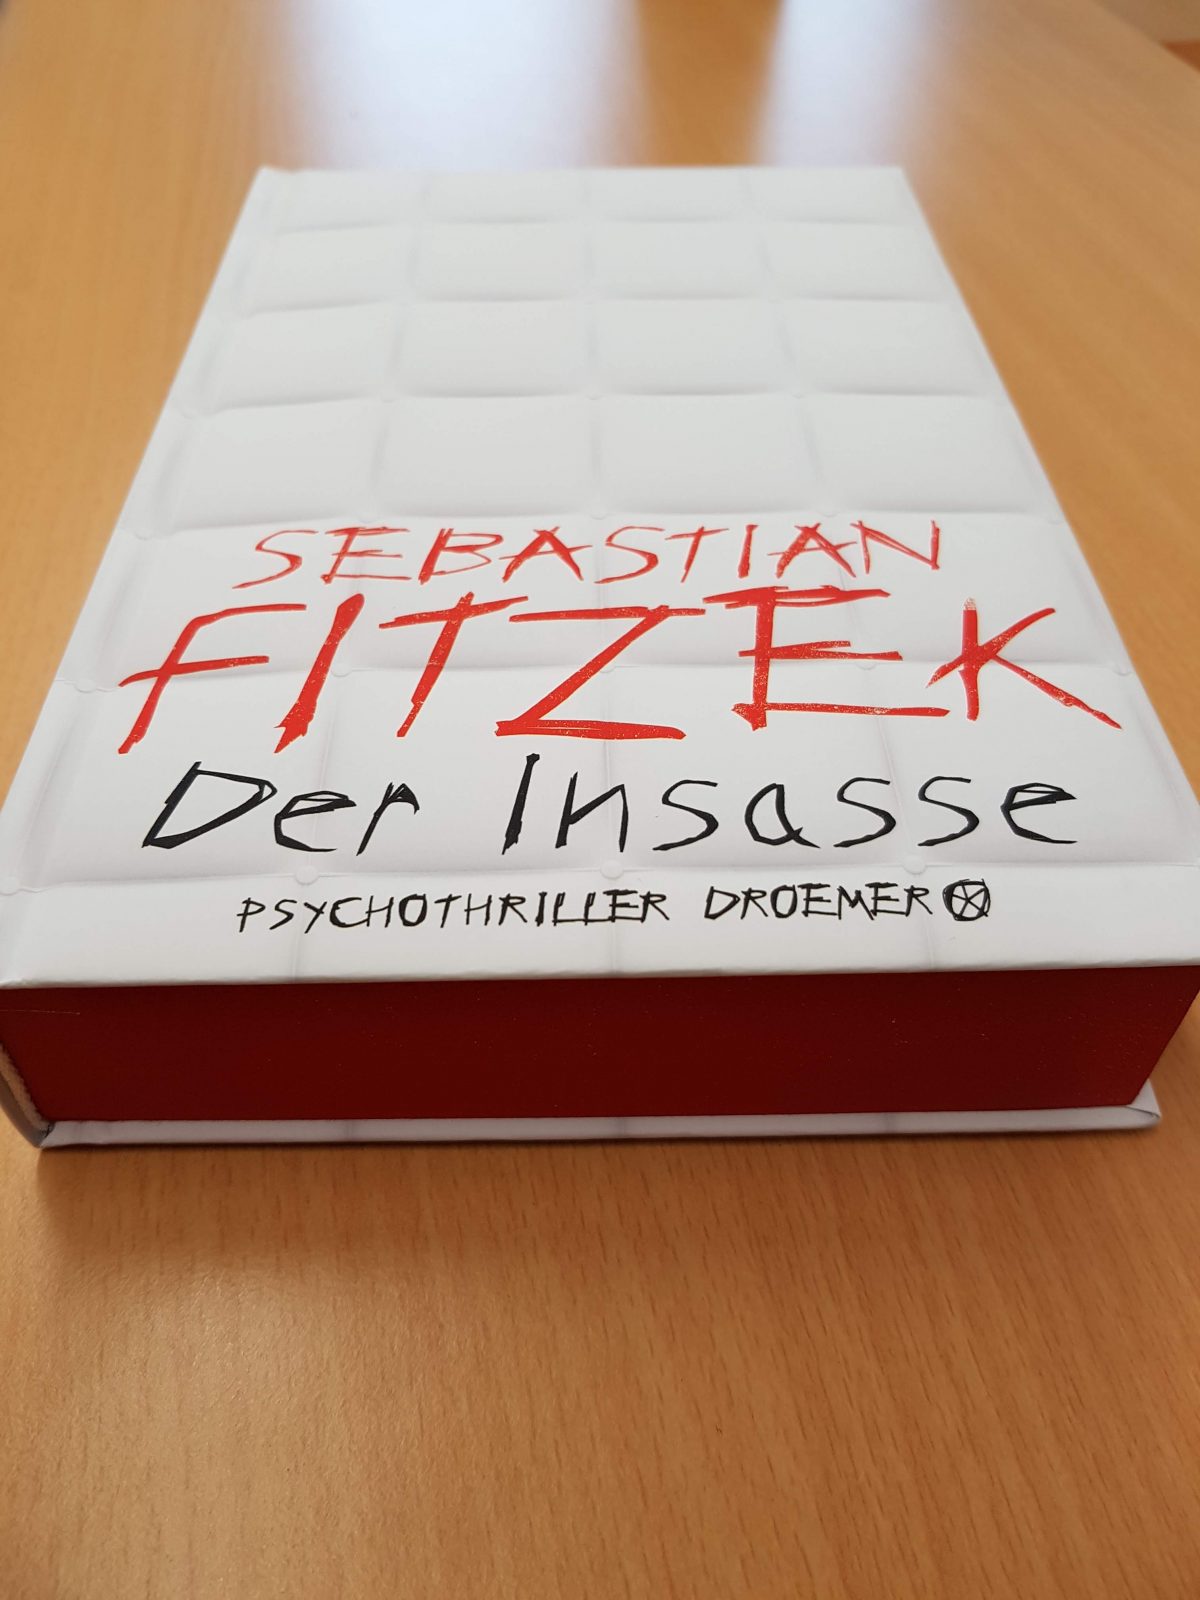 Der Insasse Ein Neuer Psychothriller Von Sebastian Fitzek